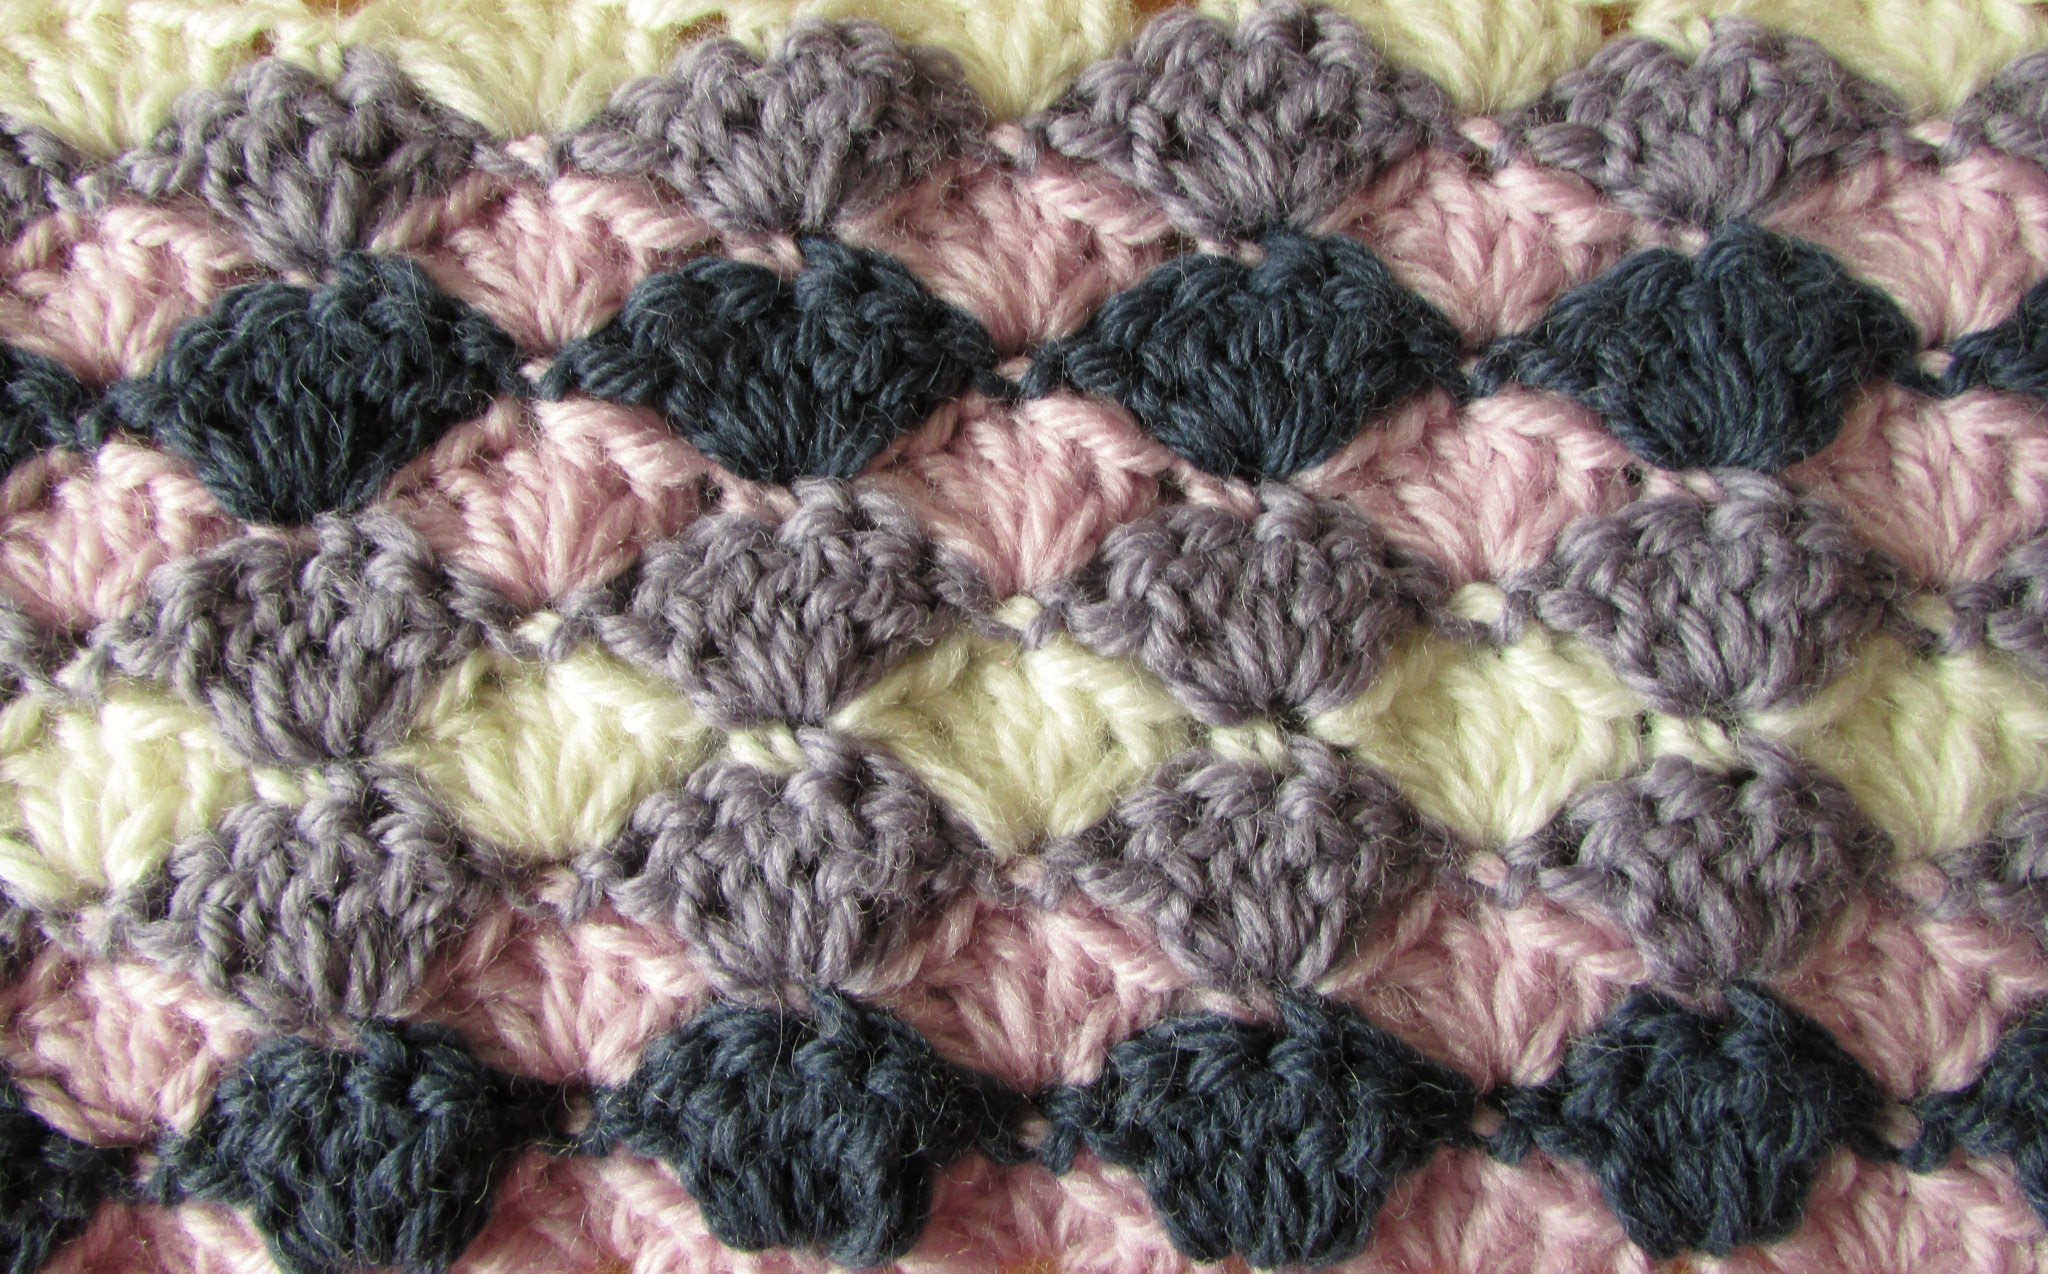 Crochet Shell Stitch Pattern Knitting Patterns Blanket Very Easy Crochet Shell Stitch Blanket